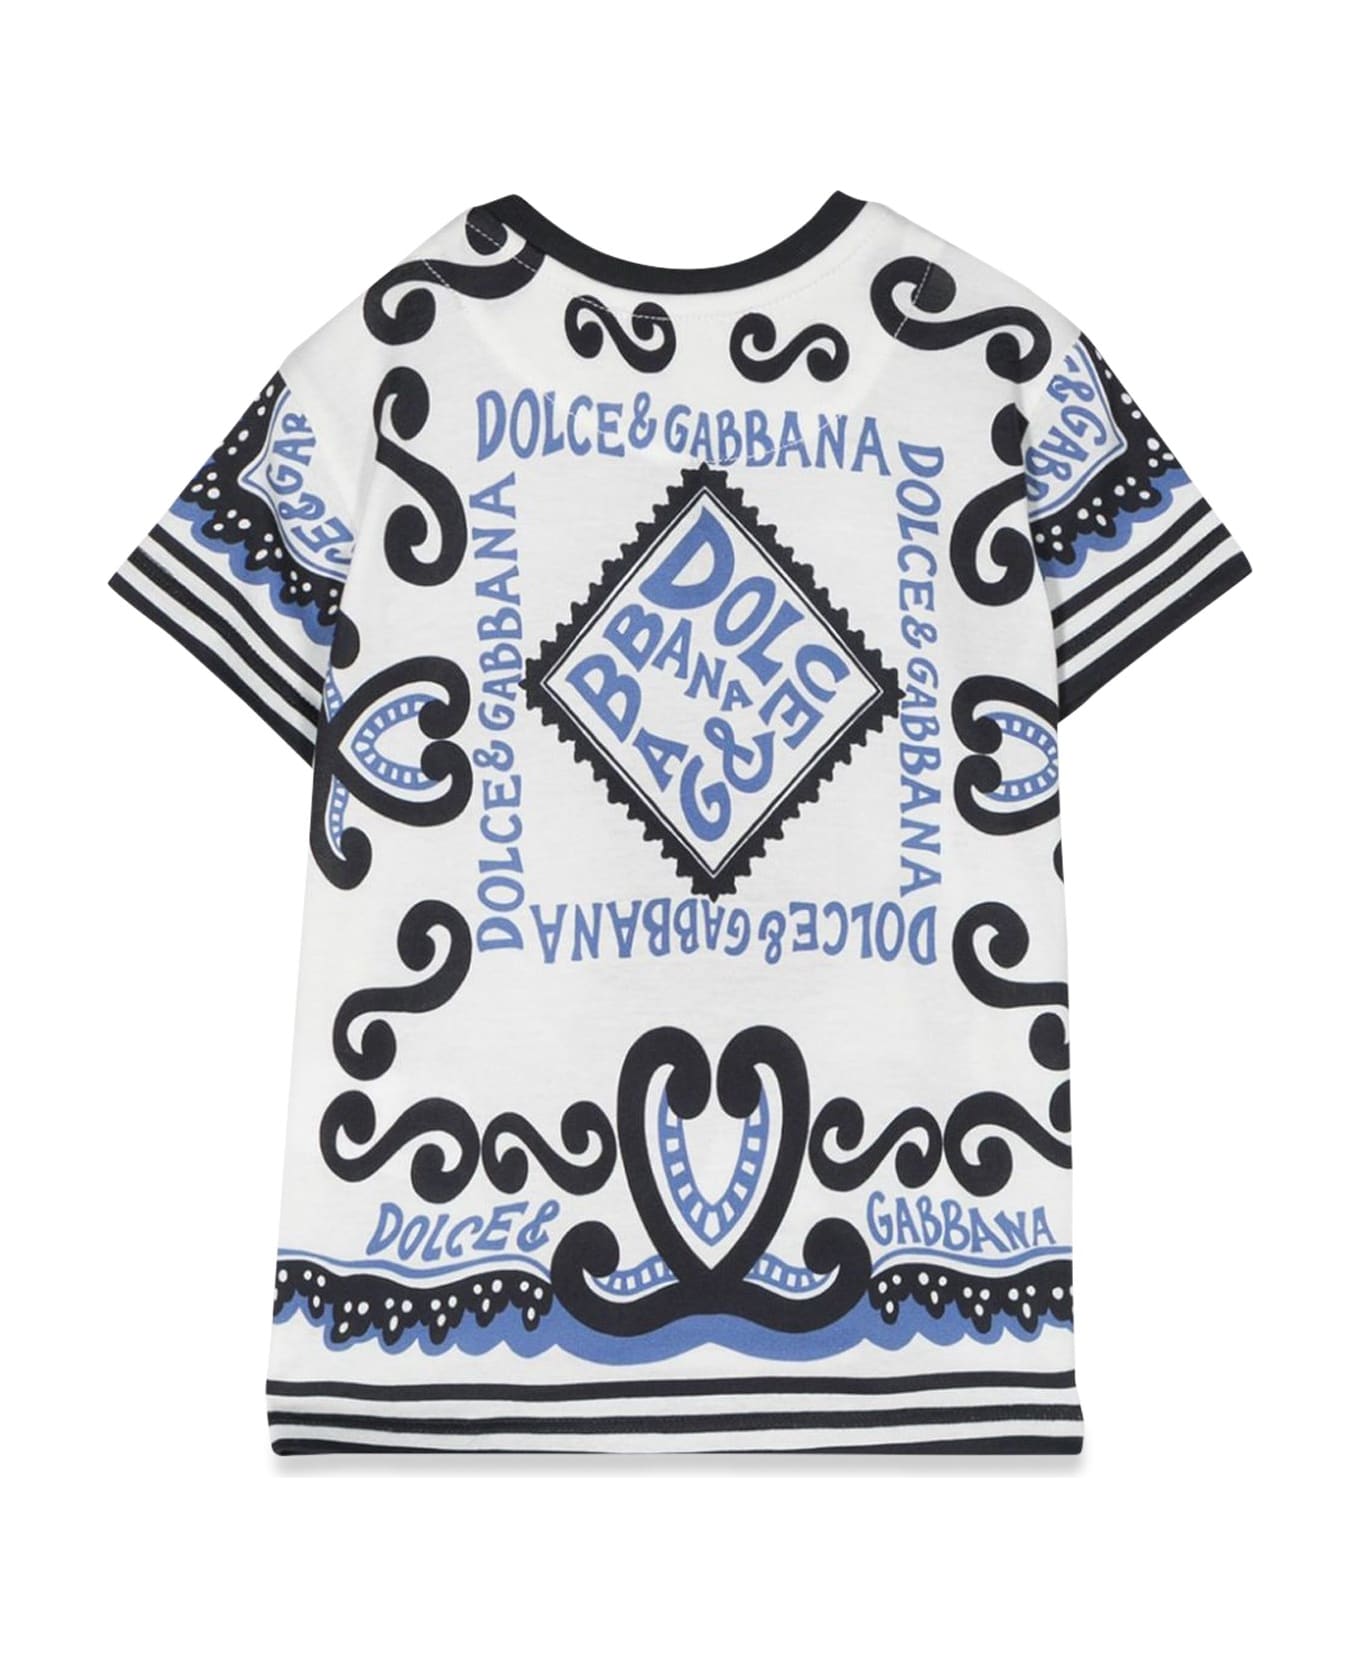 Dolce & Gabbana Short Sleeve T-shirt - AZZURRO